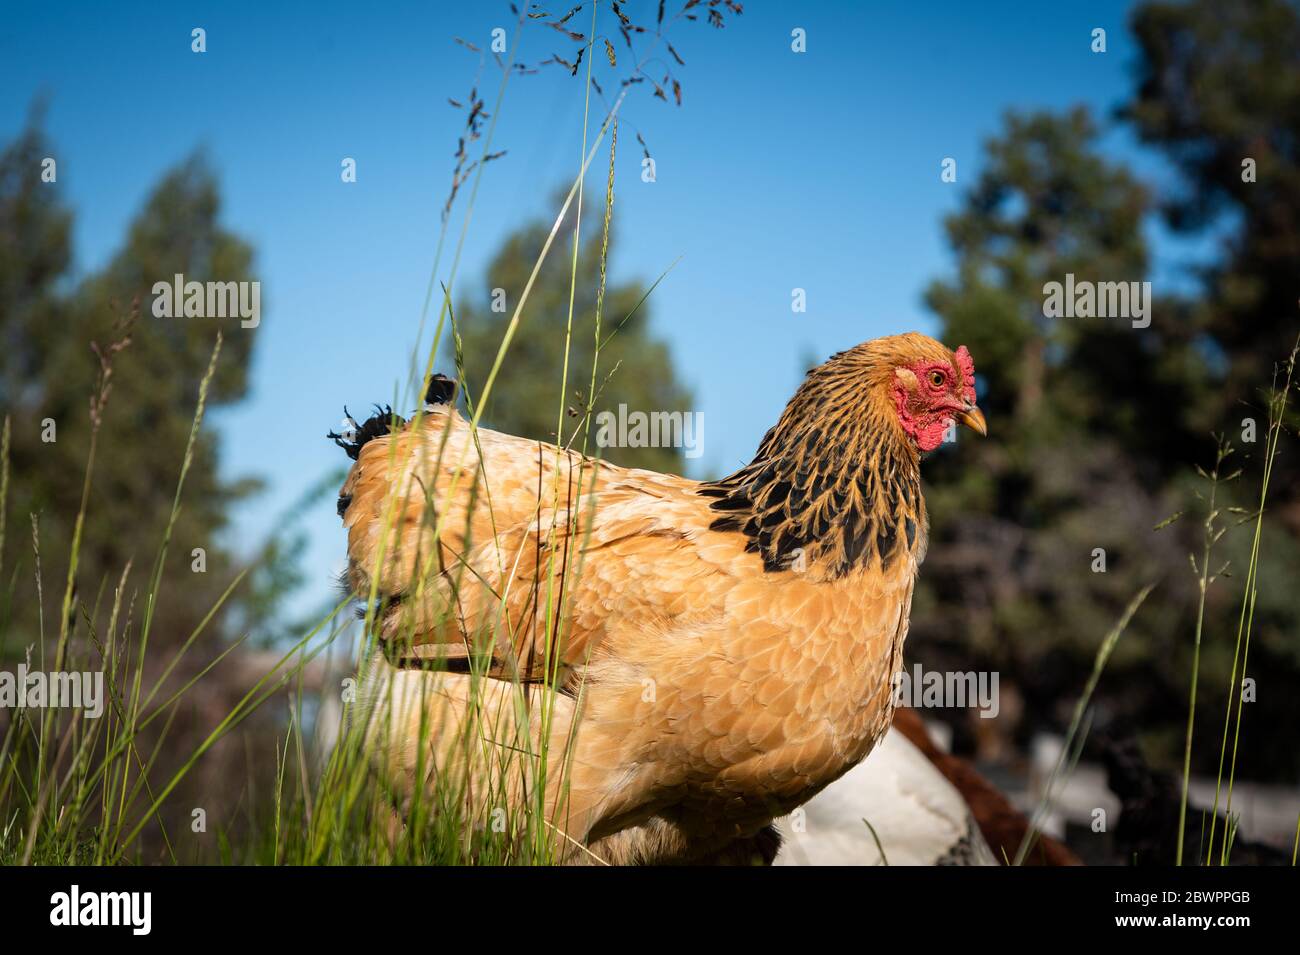 Un primer plano de una sola gallina de campo libre de pie en hierba alta con un fondo azul cielo Foto de stock